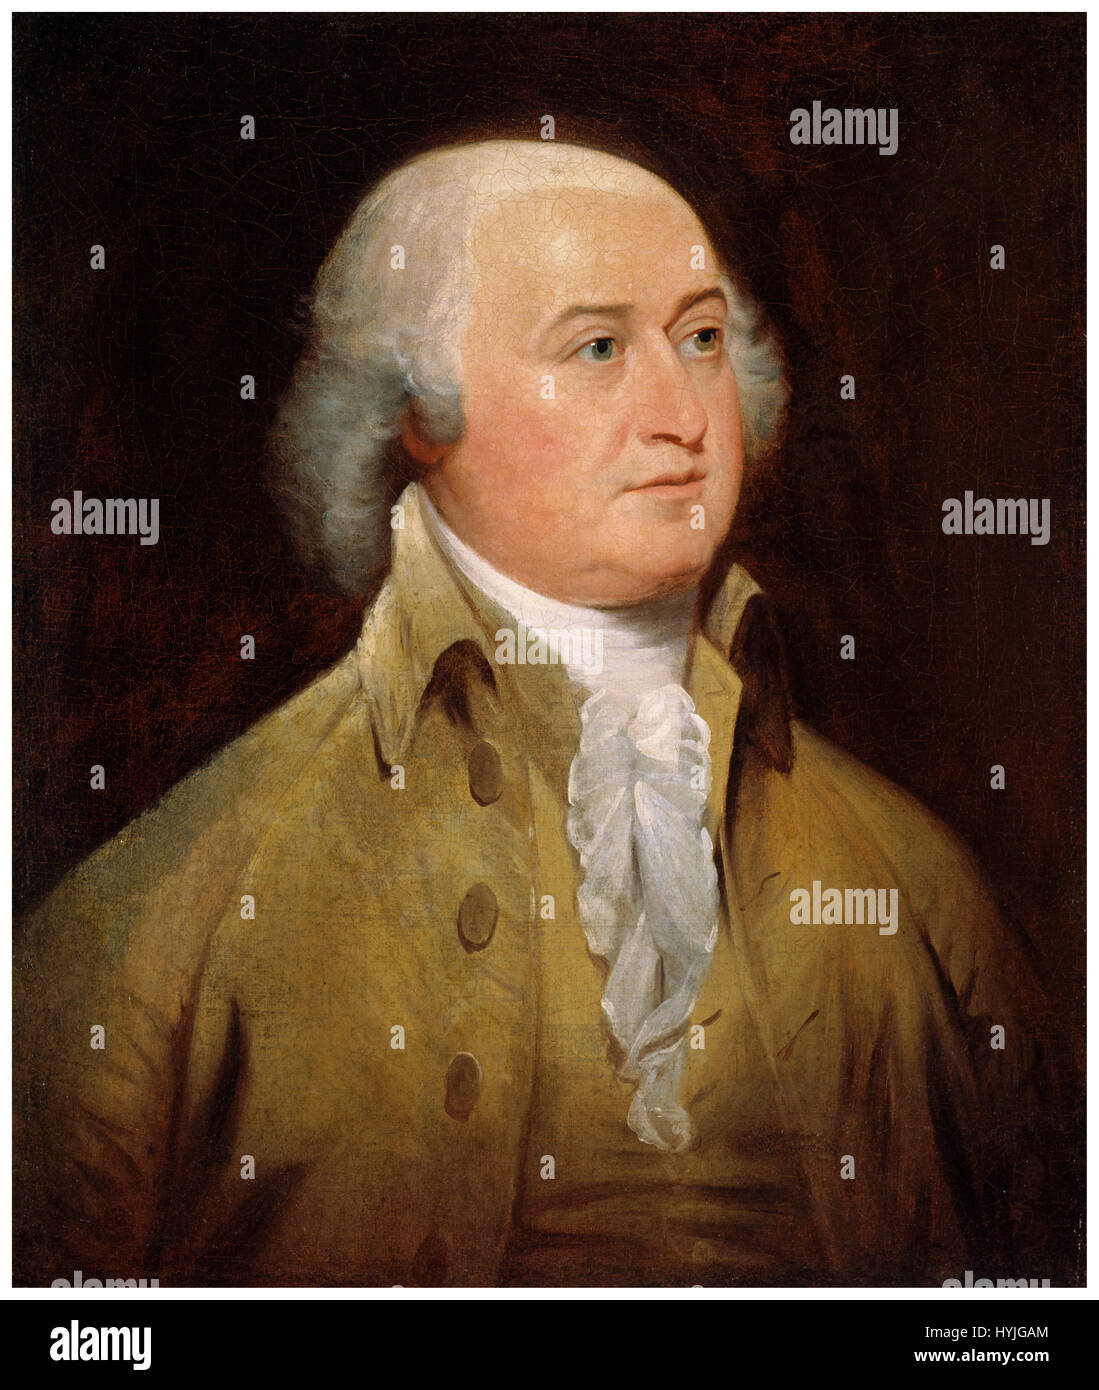 John Adams (30 octobre 1735 - 4 juillet 1826) était un avocat américain, auteur, homme d'État et diplomate. Il a été le deuxième Président des États-Unis (1797-1801), le premier vice-président (1789-1797), et comme un père fondateur était un leader de l'indépendance de la Grande-Bretagne. Banque D'Images